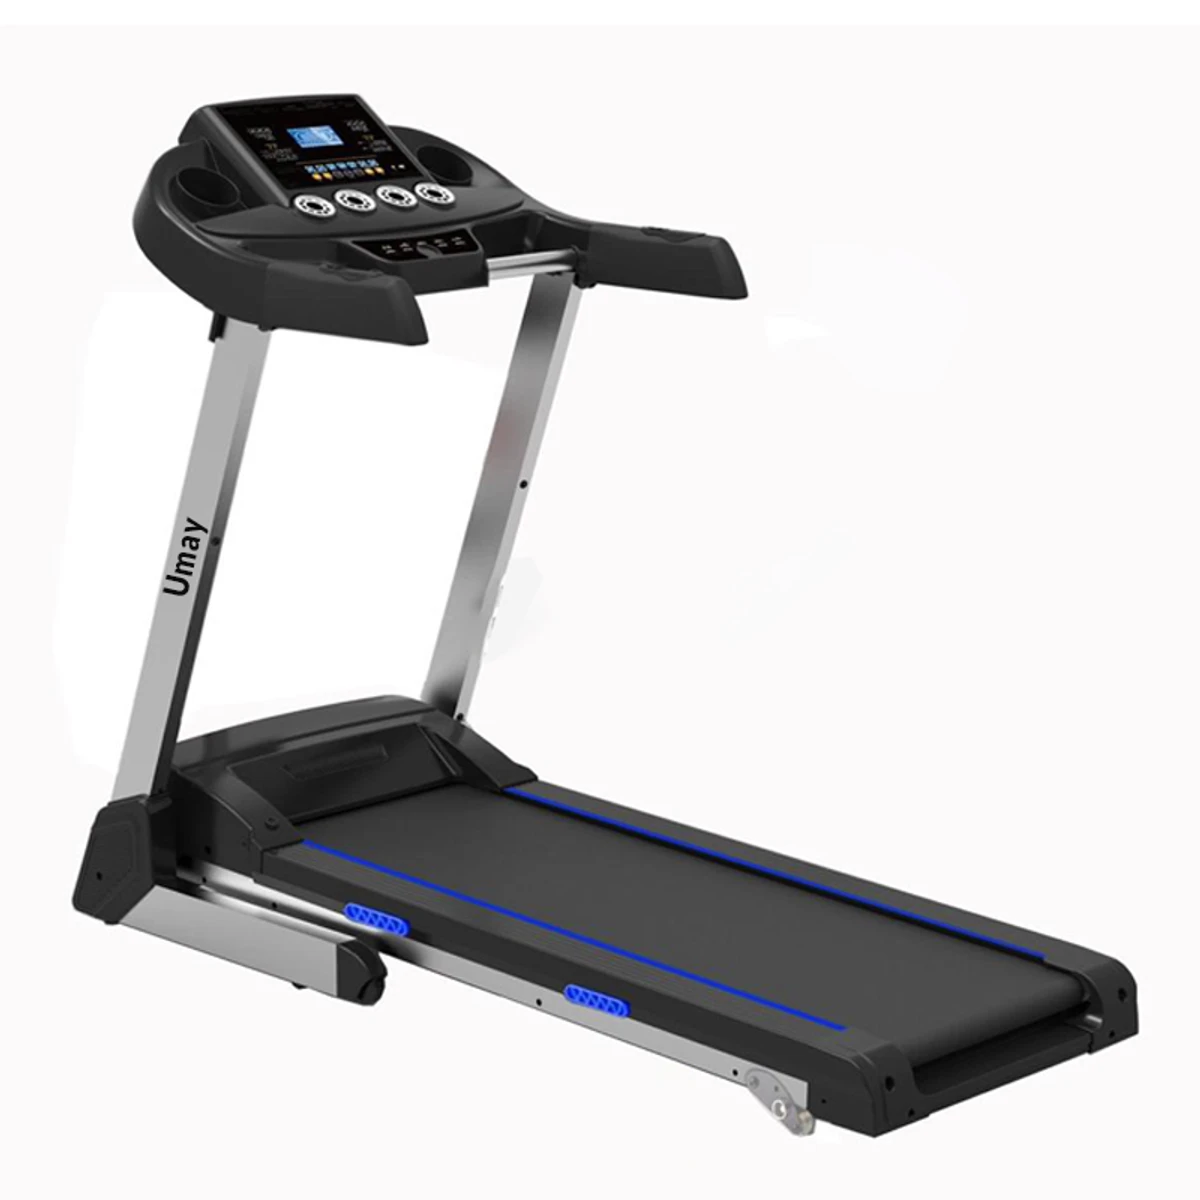 Umay T700MS foldable motorized treadmill